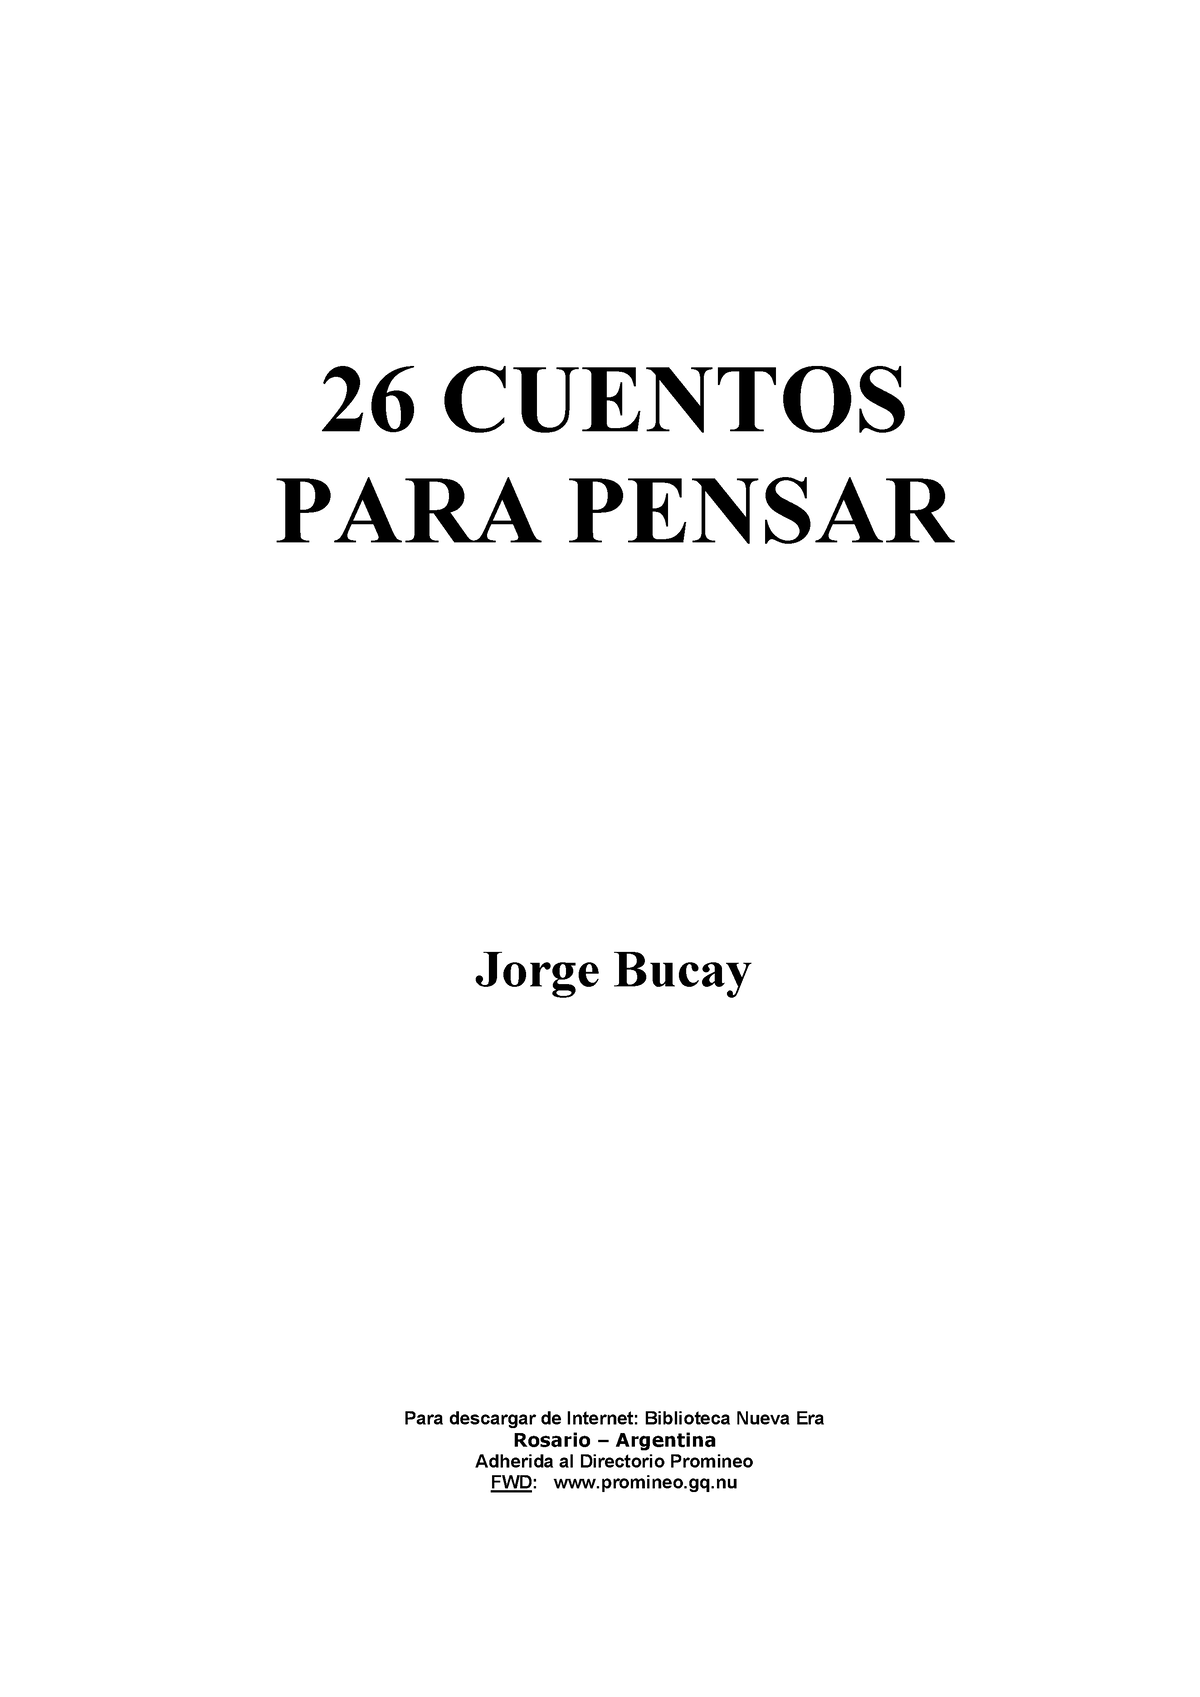 26 Cuentos PARA Pensar - Jorge Bucay - 26 CUENTOS PARA PENSAR Jorge Bucay  Para descargar de - Studocu